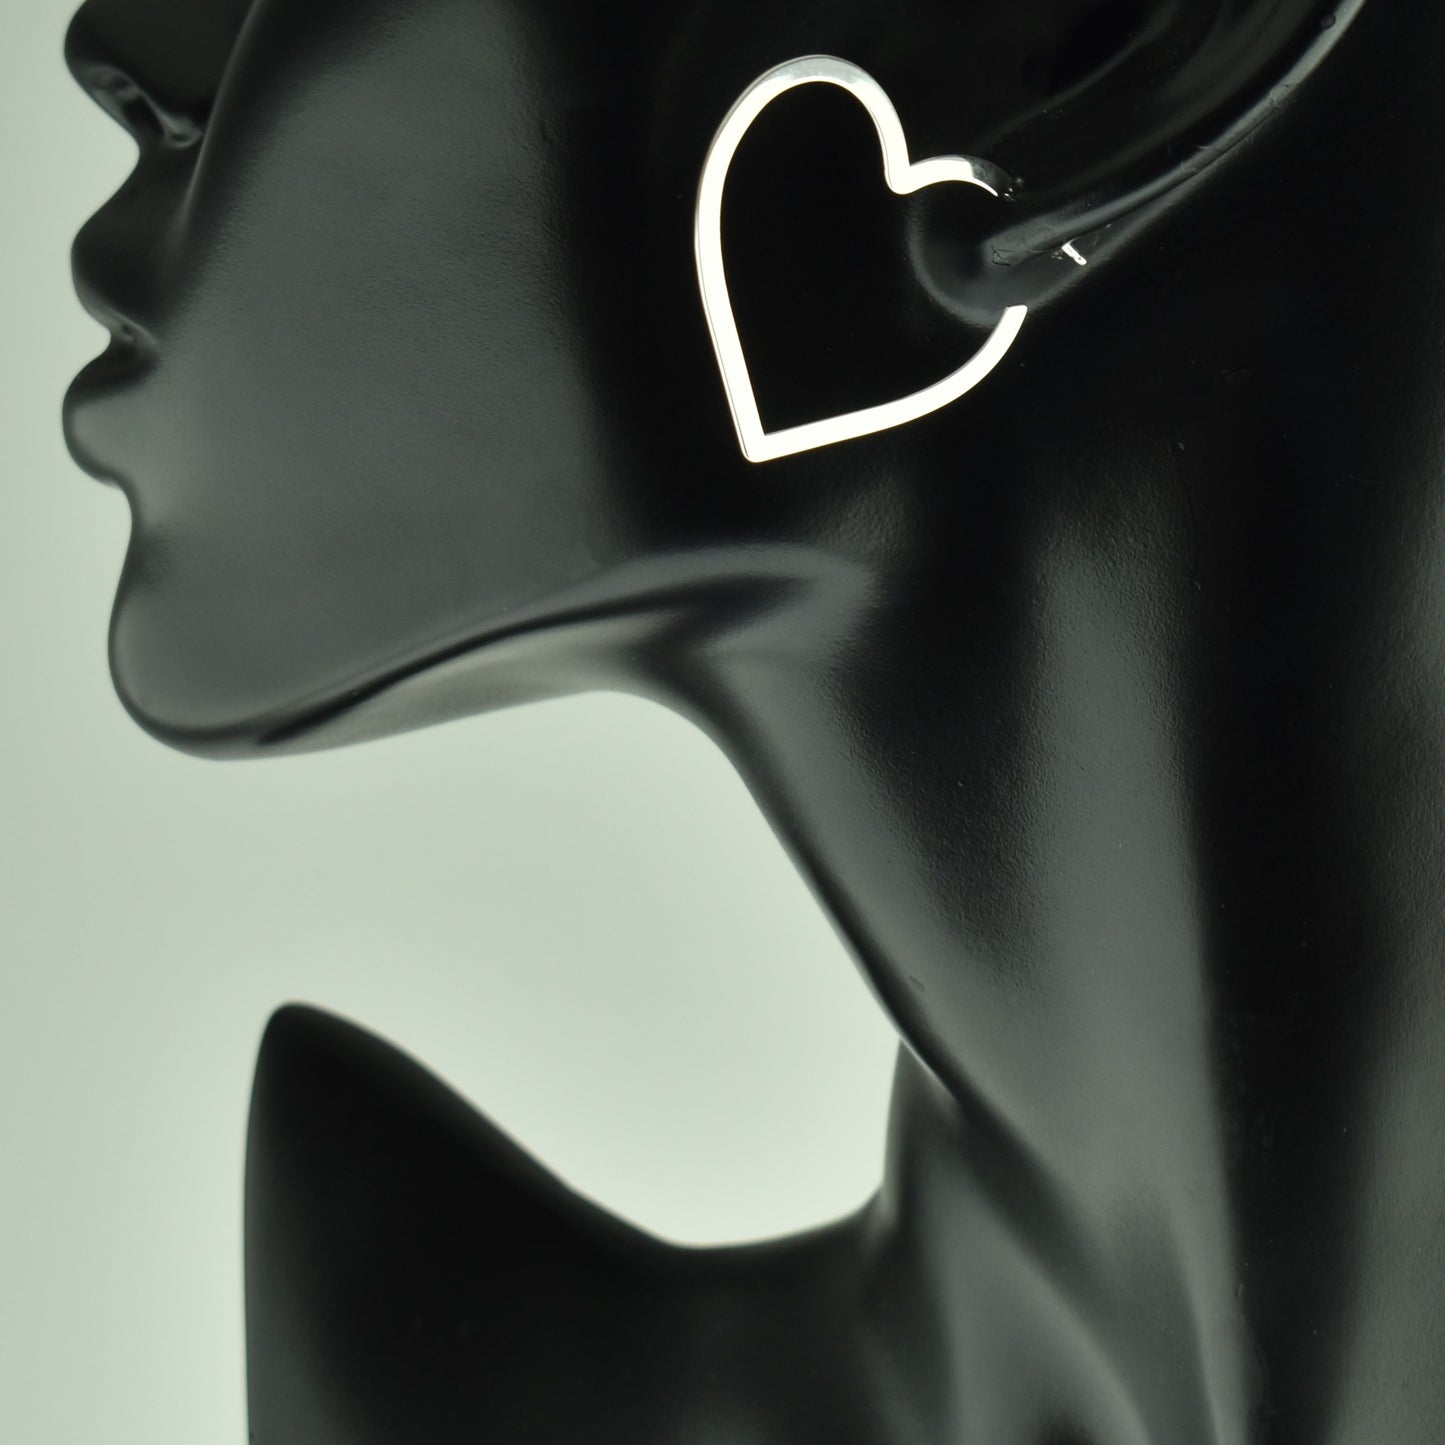 Silver 925 Heart Earrings